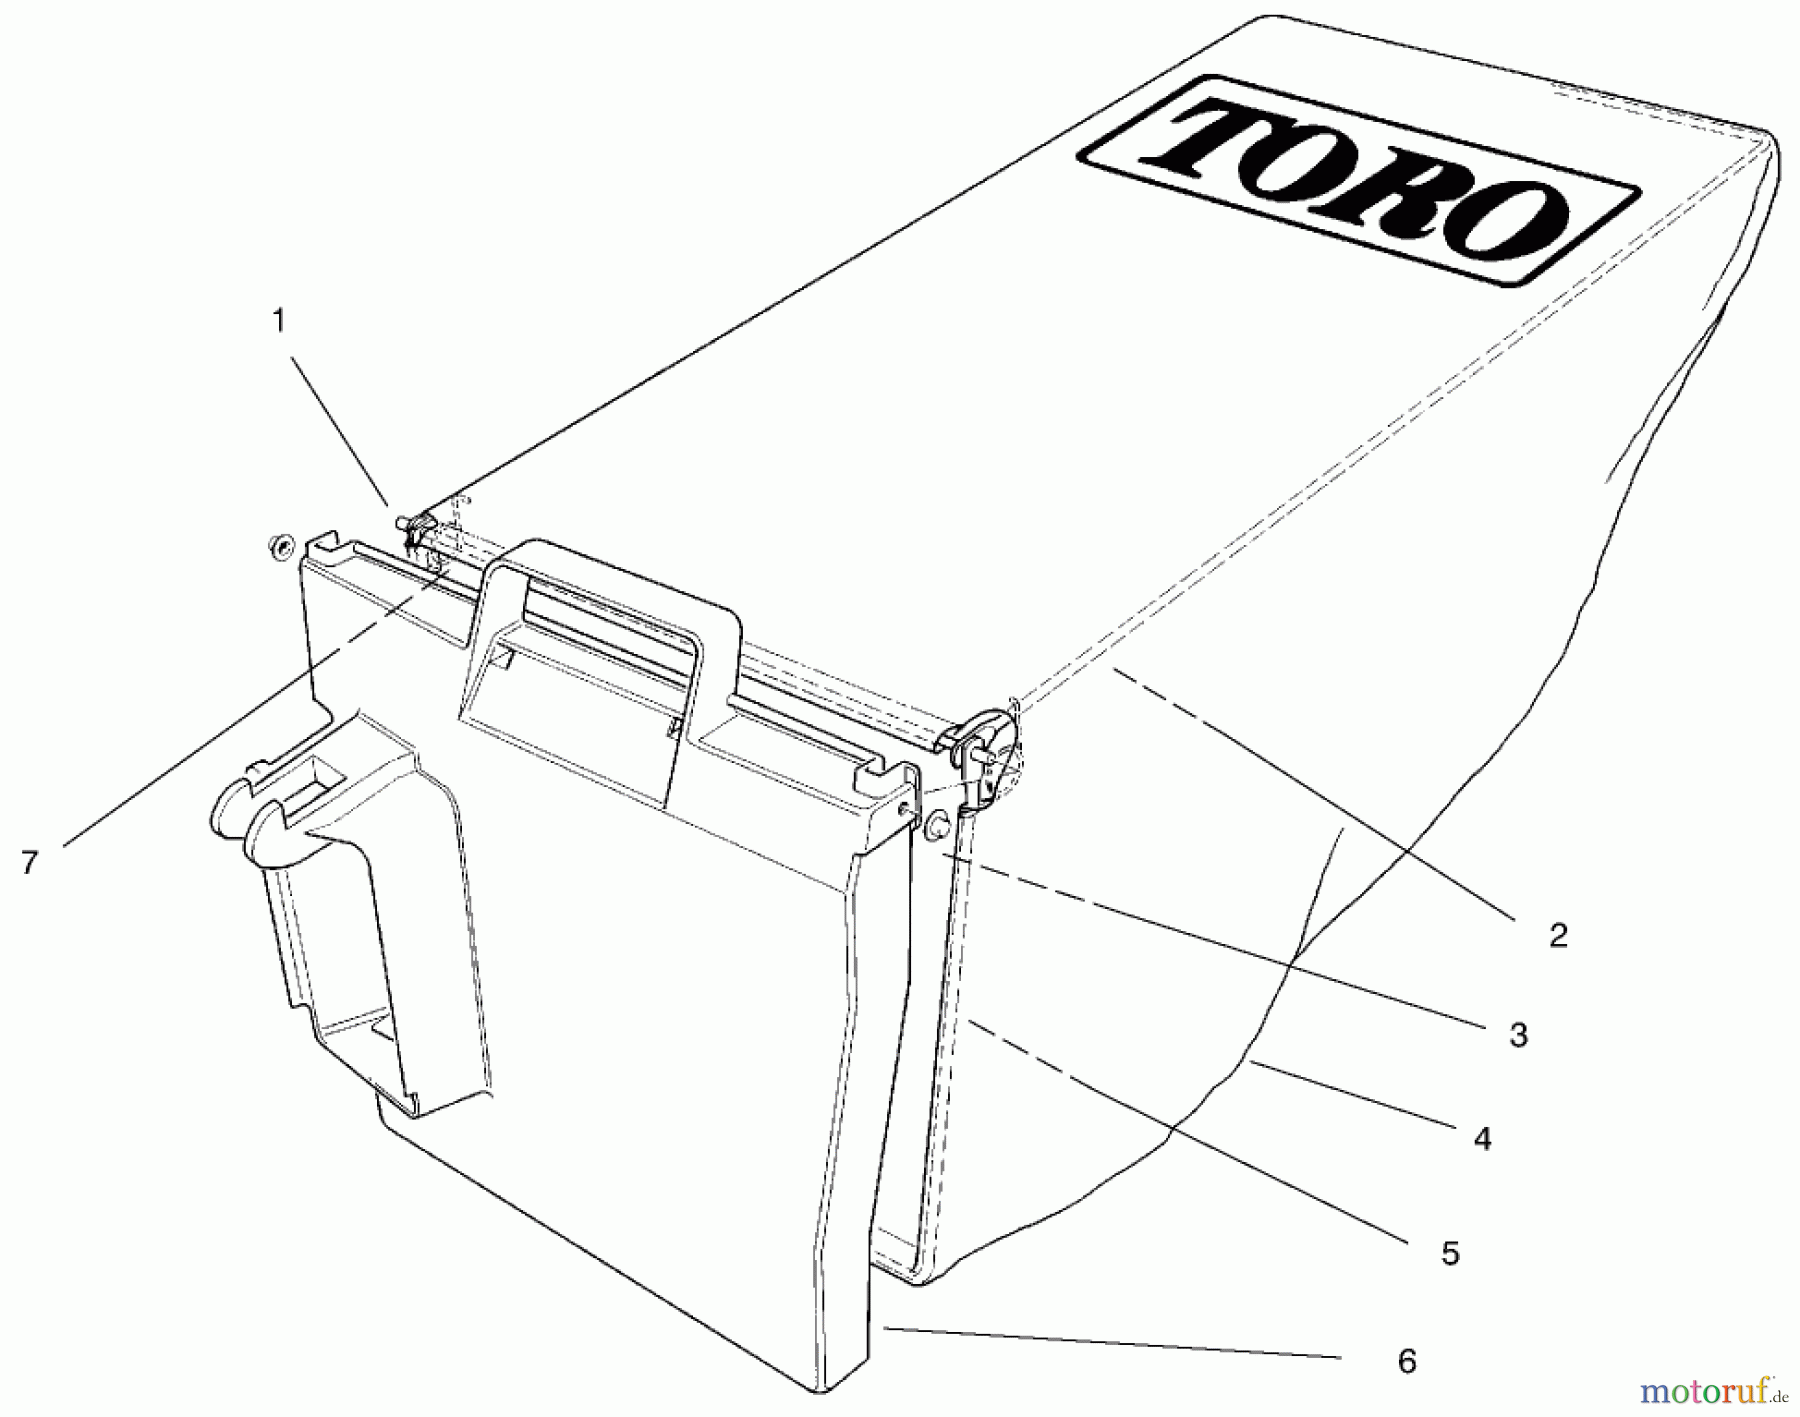  Toro Neu Accessories, Mower 59279 - Toro Bagging Kit, 18